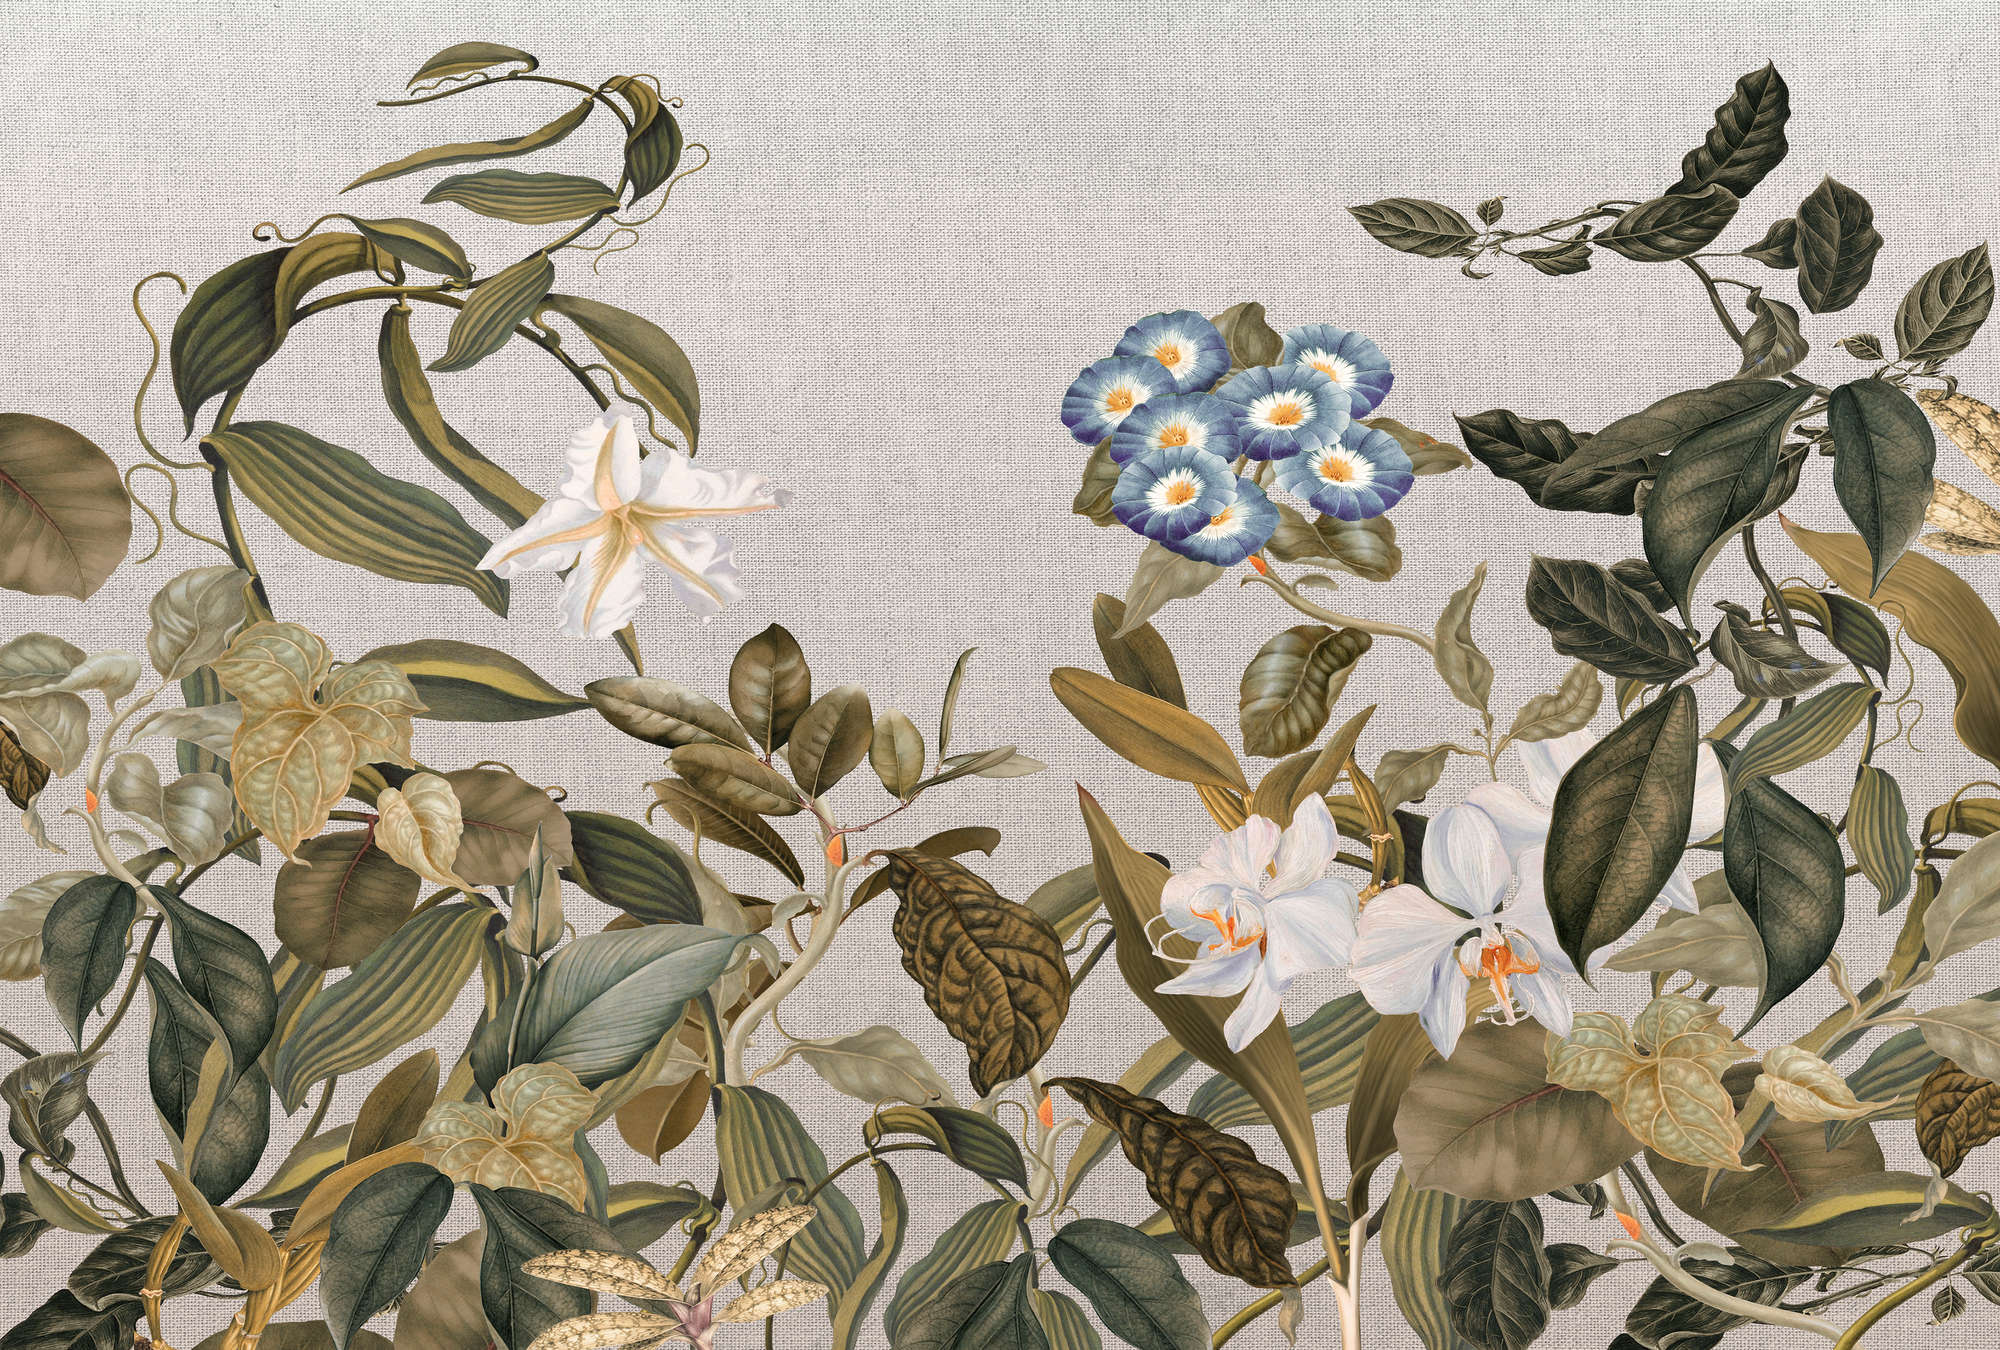             Fotomurali in stile botanico Fiori, foglie e aspetto tessile - Verde, grigio, blu
        